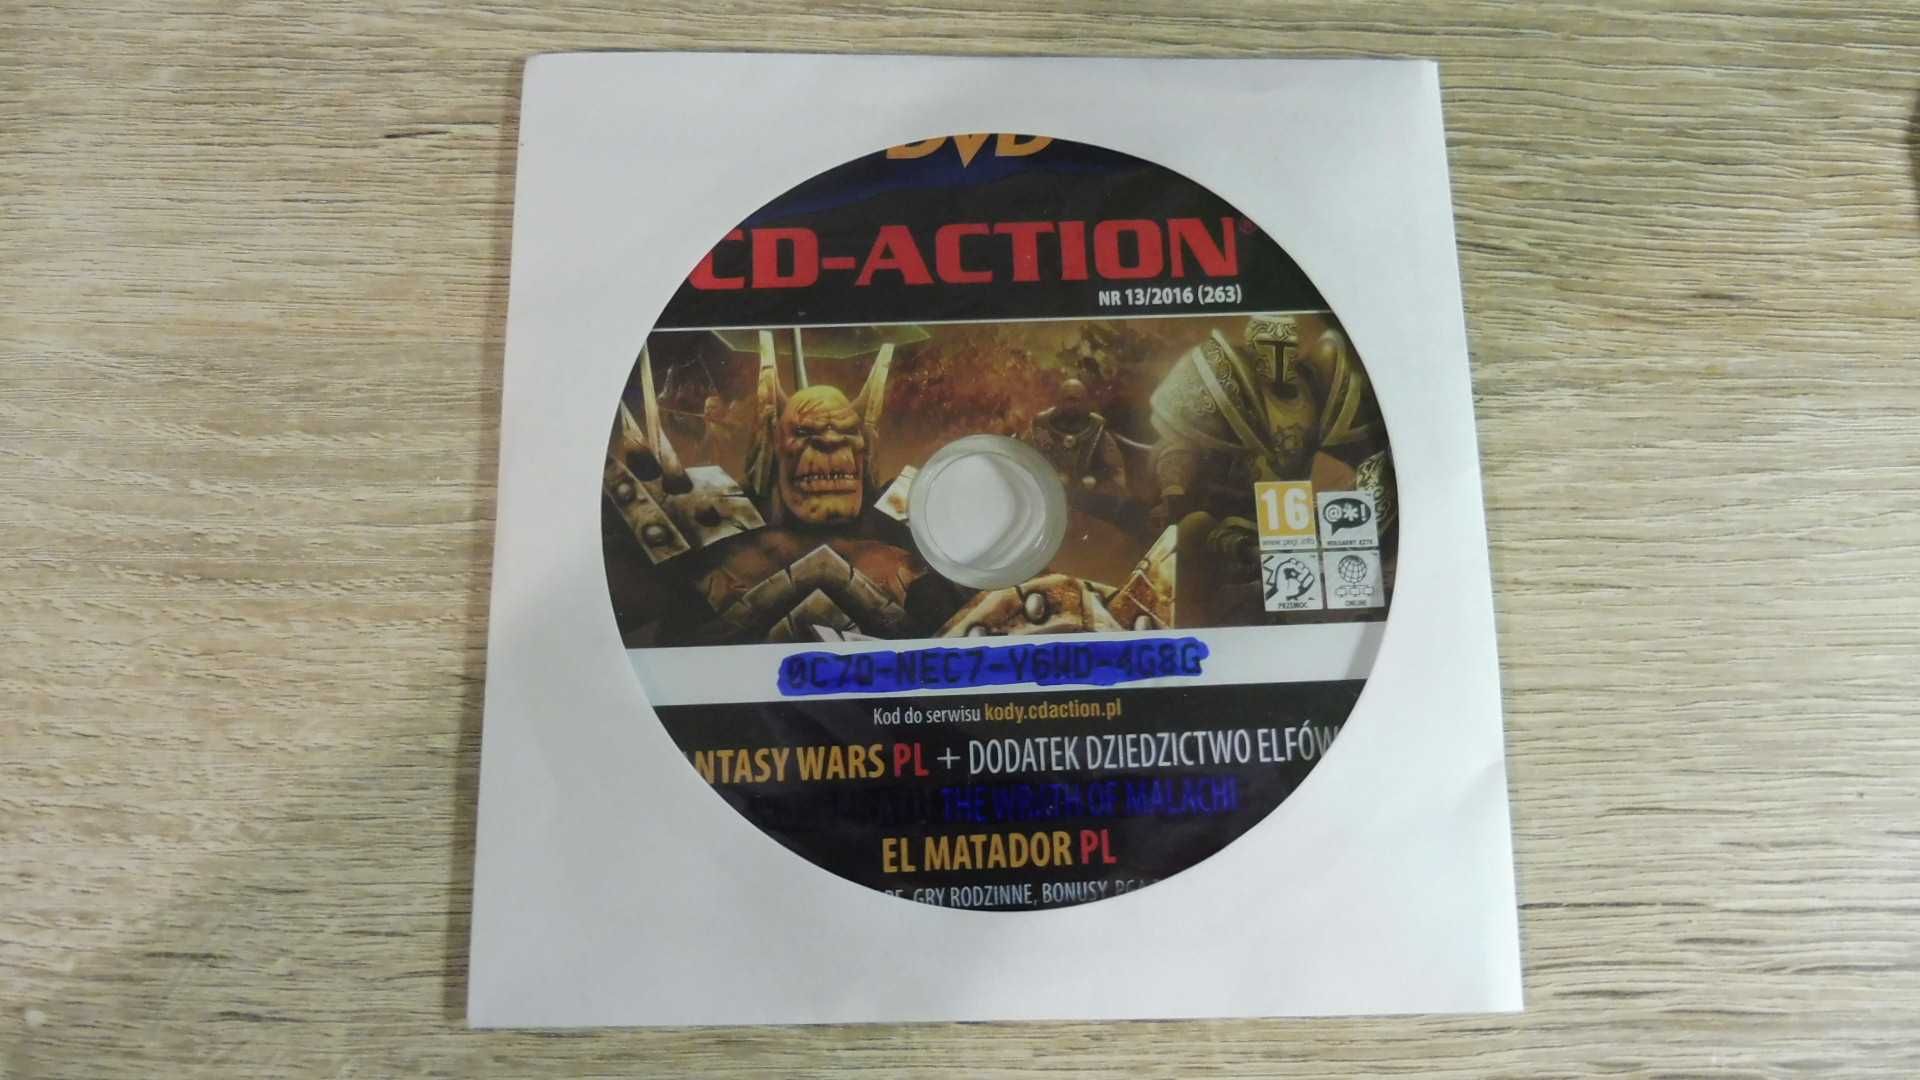 CD Action 13/2016 (263) - Fantasy Wars + Dodatek PL, El Matador PL